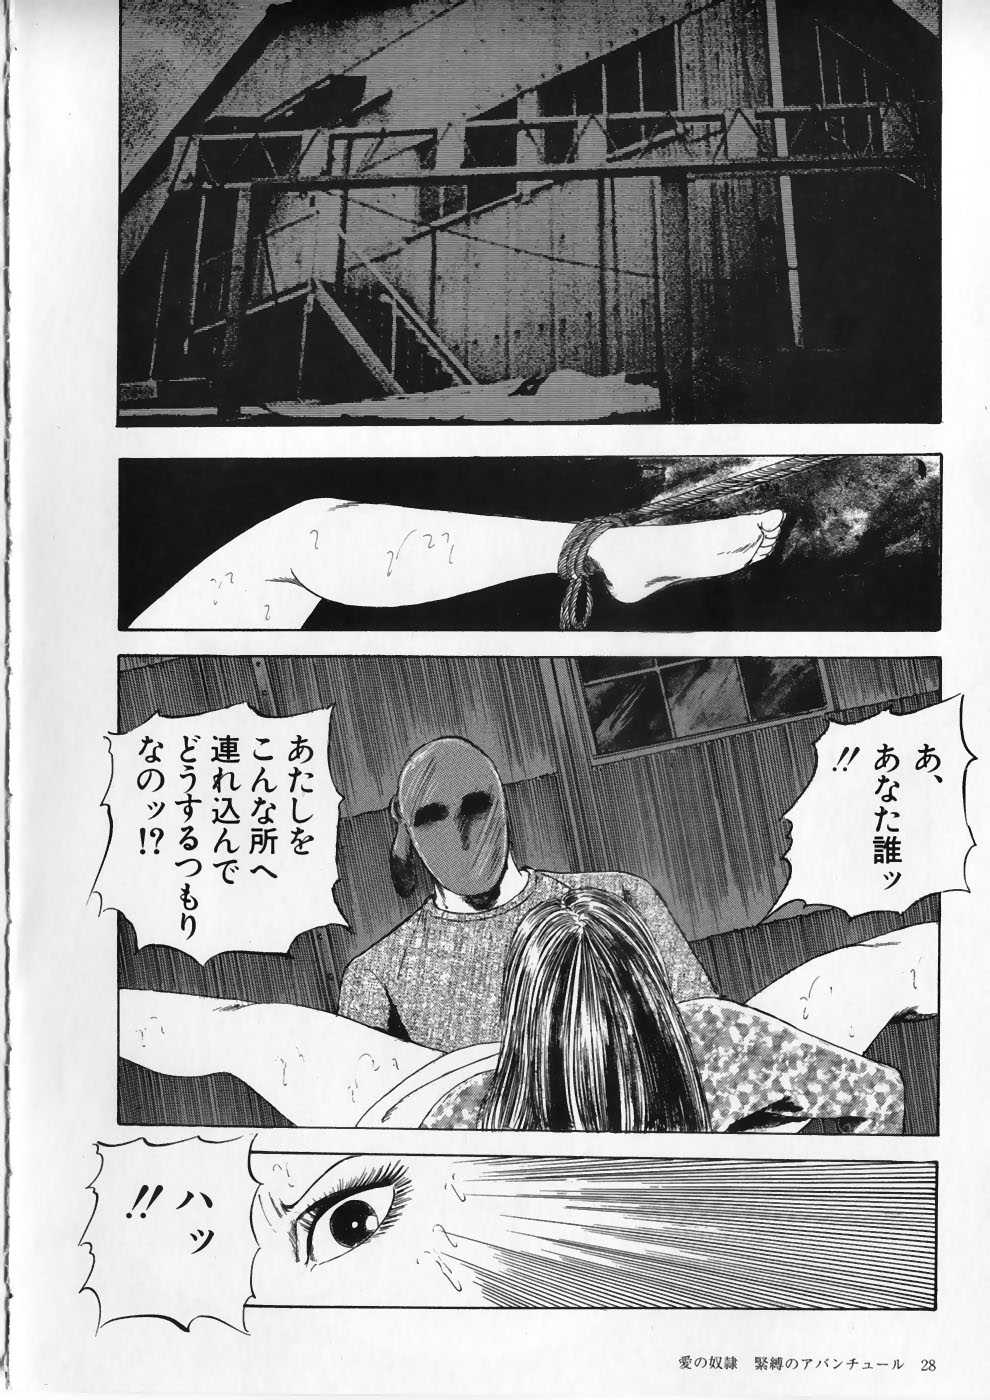 [Ryuu Kumon] Ai no Dorei - Kinbaku no Aventure (New-Half Heaven 1) [九紋竜] 愛の奴隷―緊縛のアバンチュール